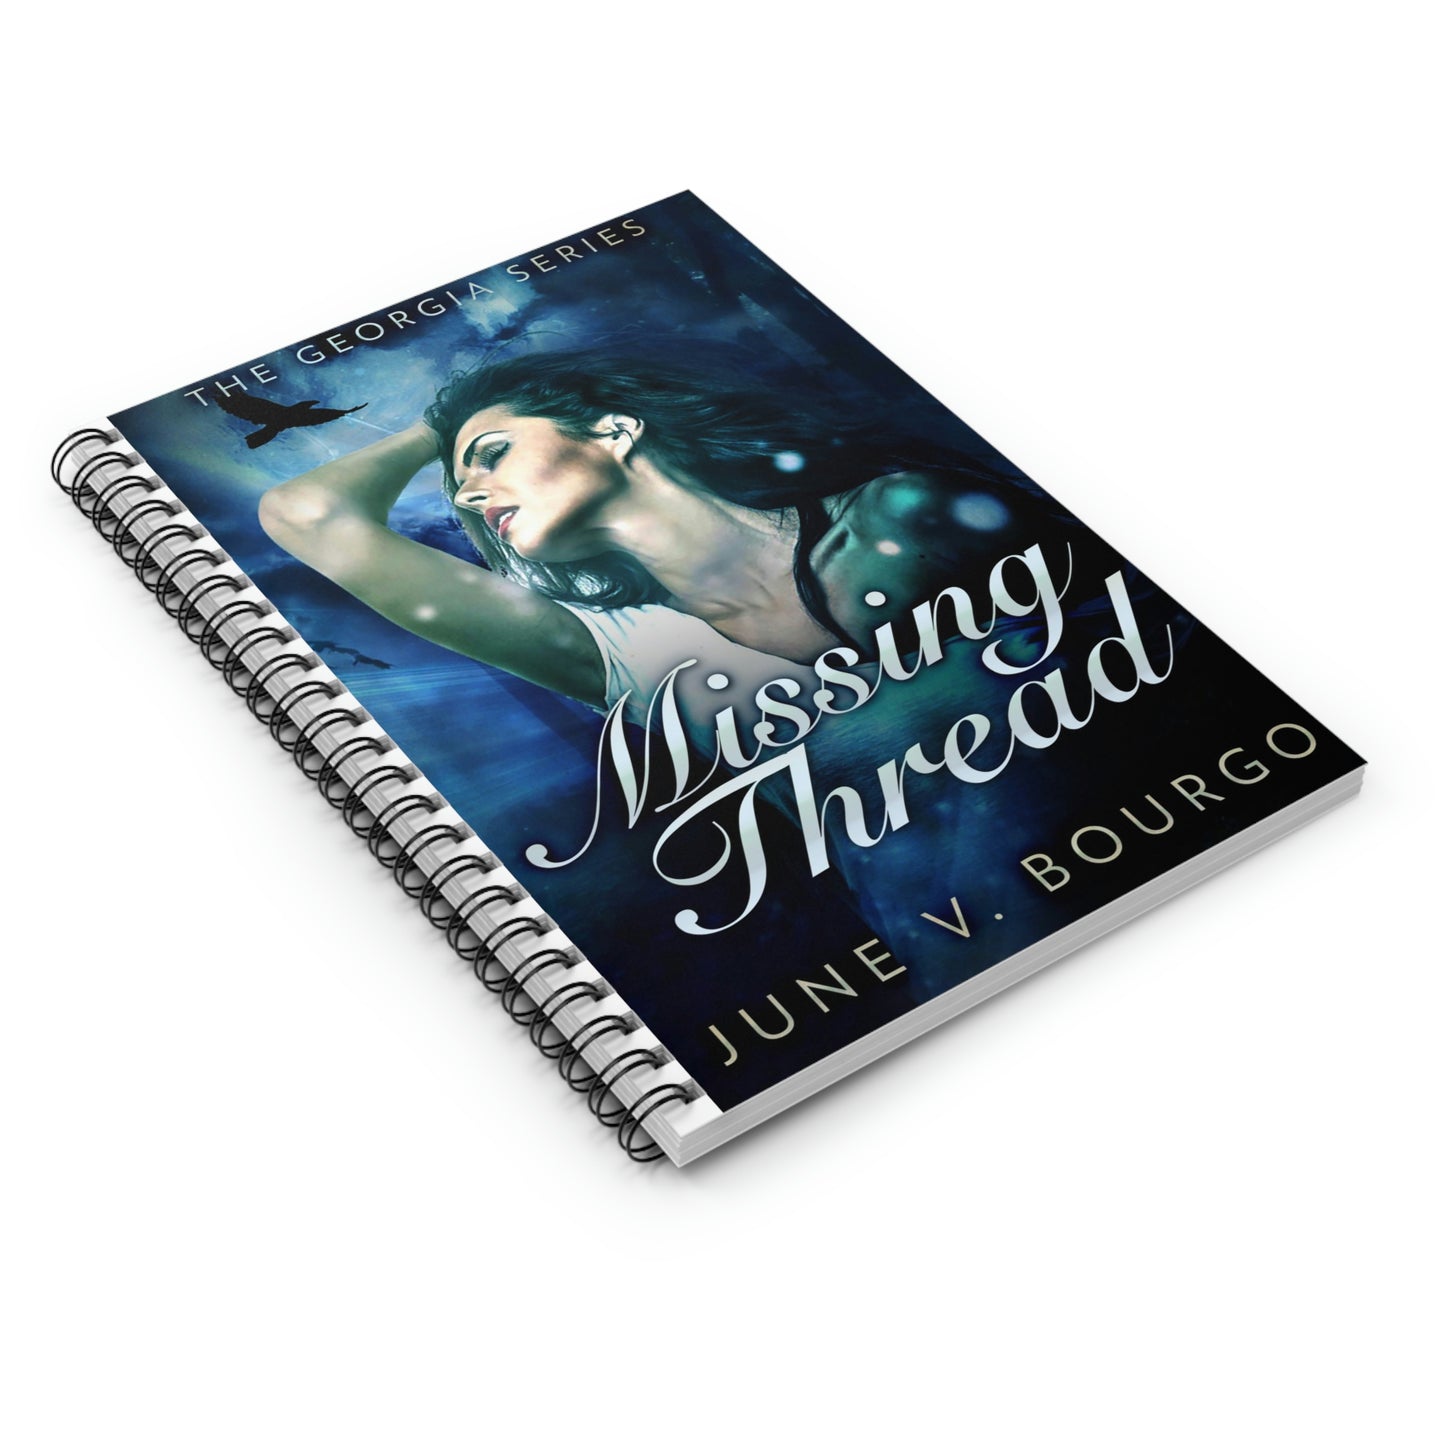 Missing Thread - Spiral Notebook